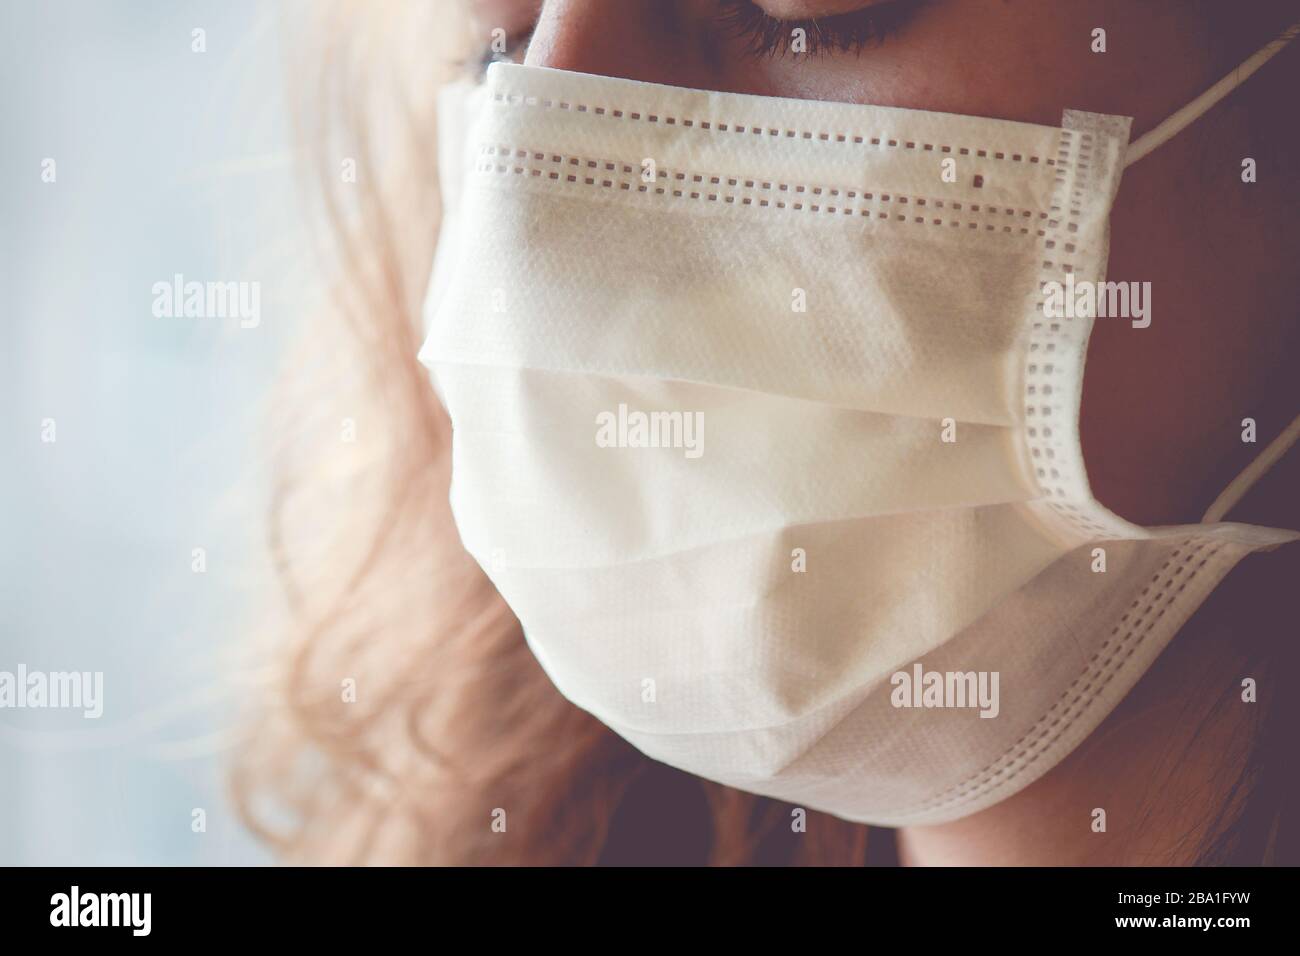 Détail de la femme caucasienne portant un masque médical blanc. La femme pleure, les yeux fermés. Concentrez-vous sur la partie avant du visage, sur un arrière-plan flou. Coronavirus, COVID-19 quarantaine. Concept infirmière. Banque D'Images